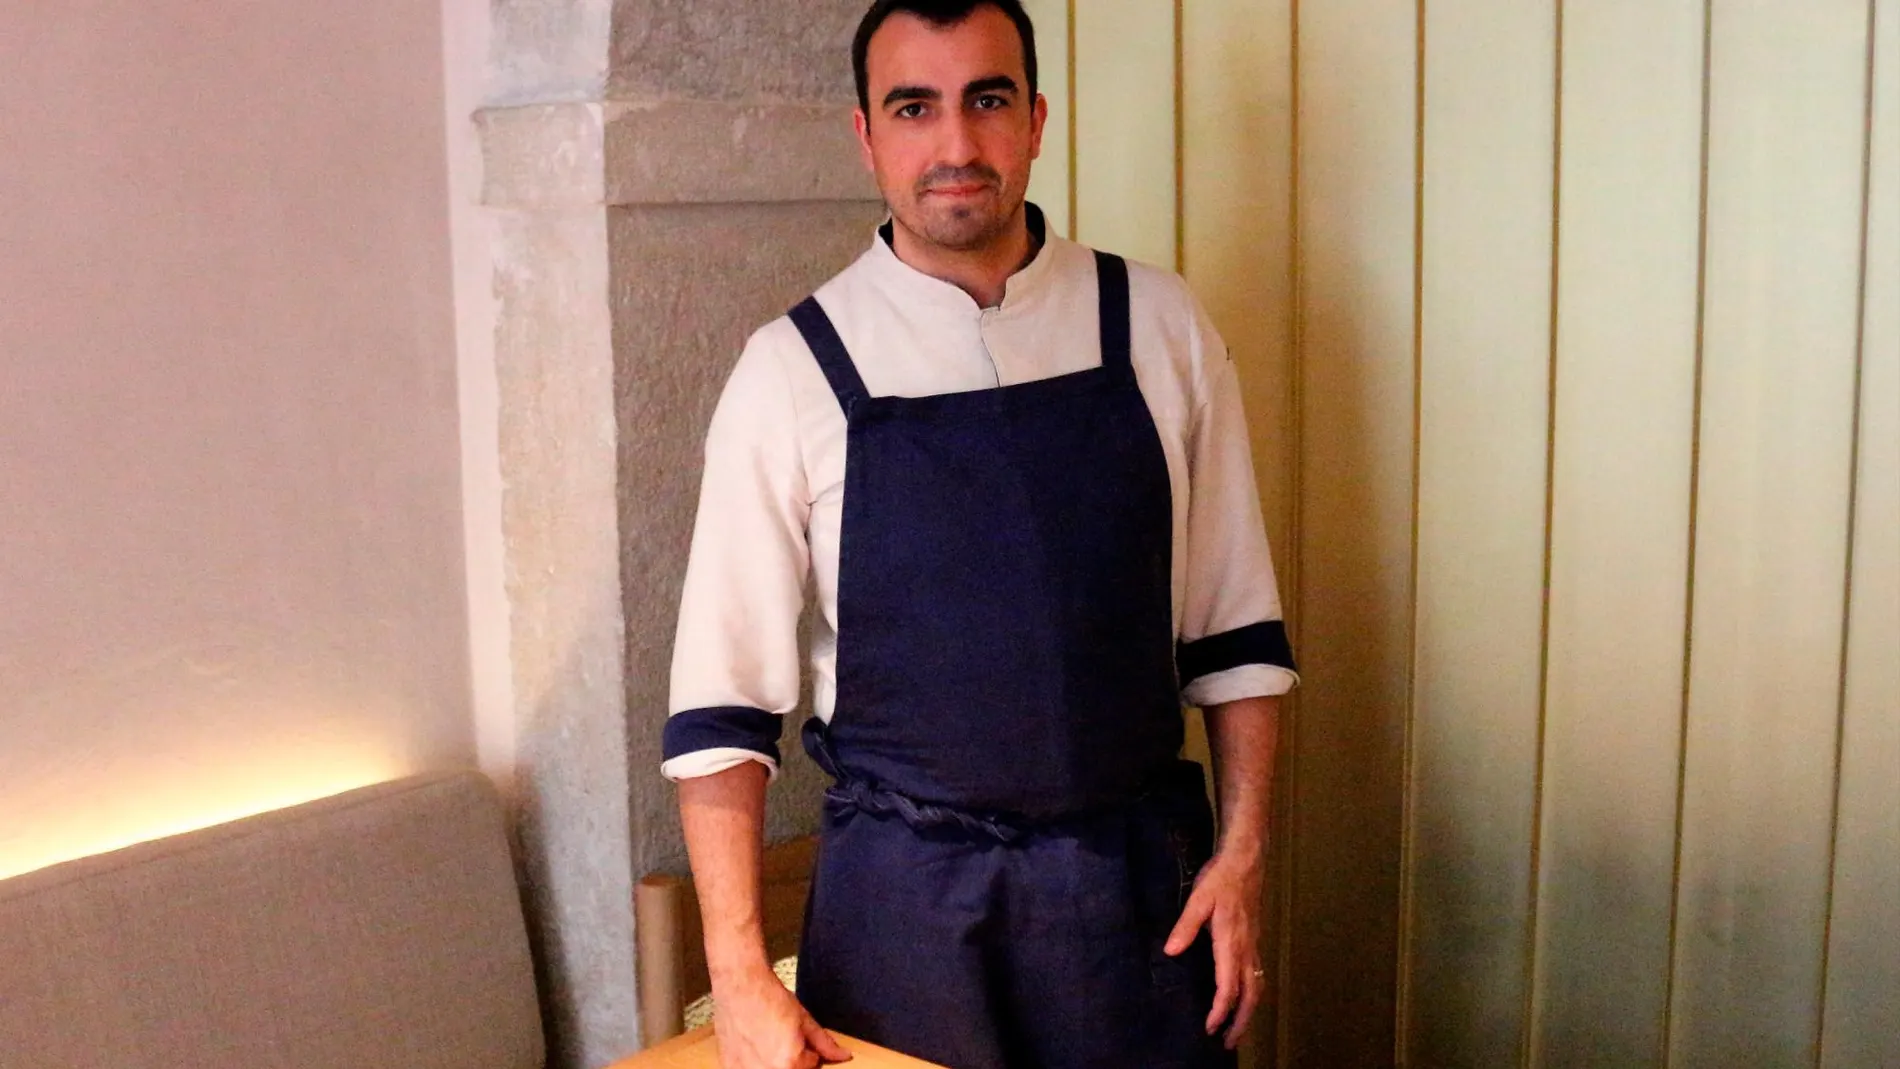 Joâo Sá, un joven cocinero formado en la Escuela de Hostelería de Estoril al frente de Sála